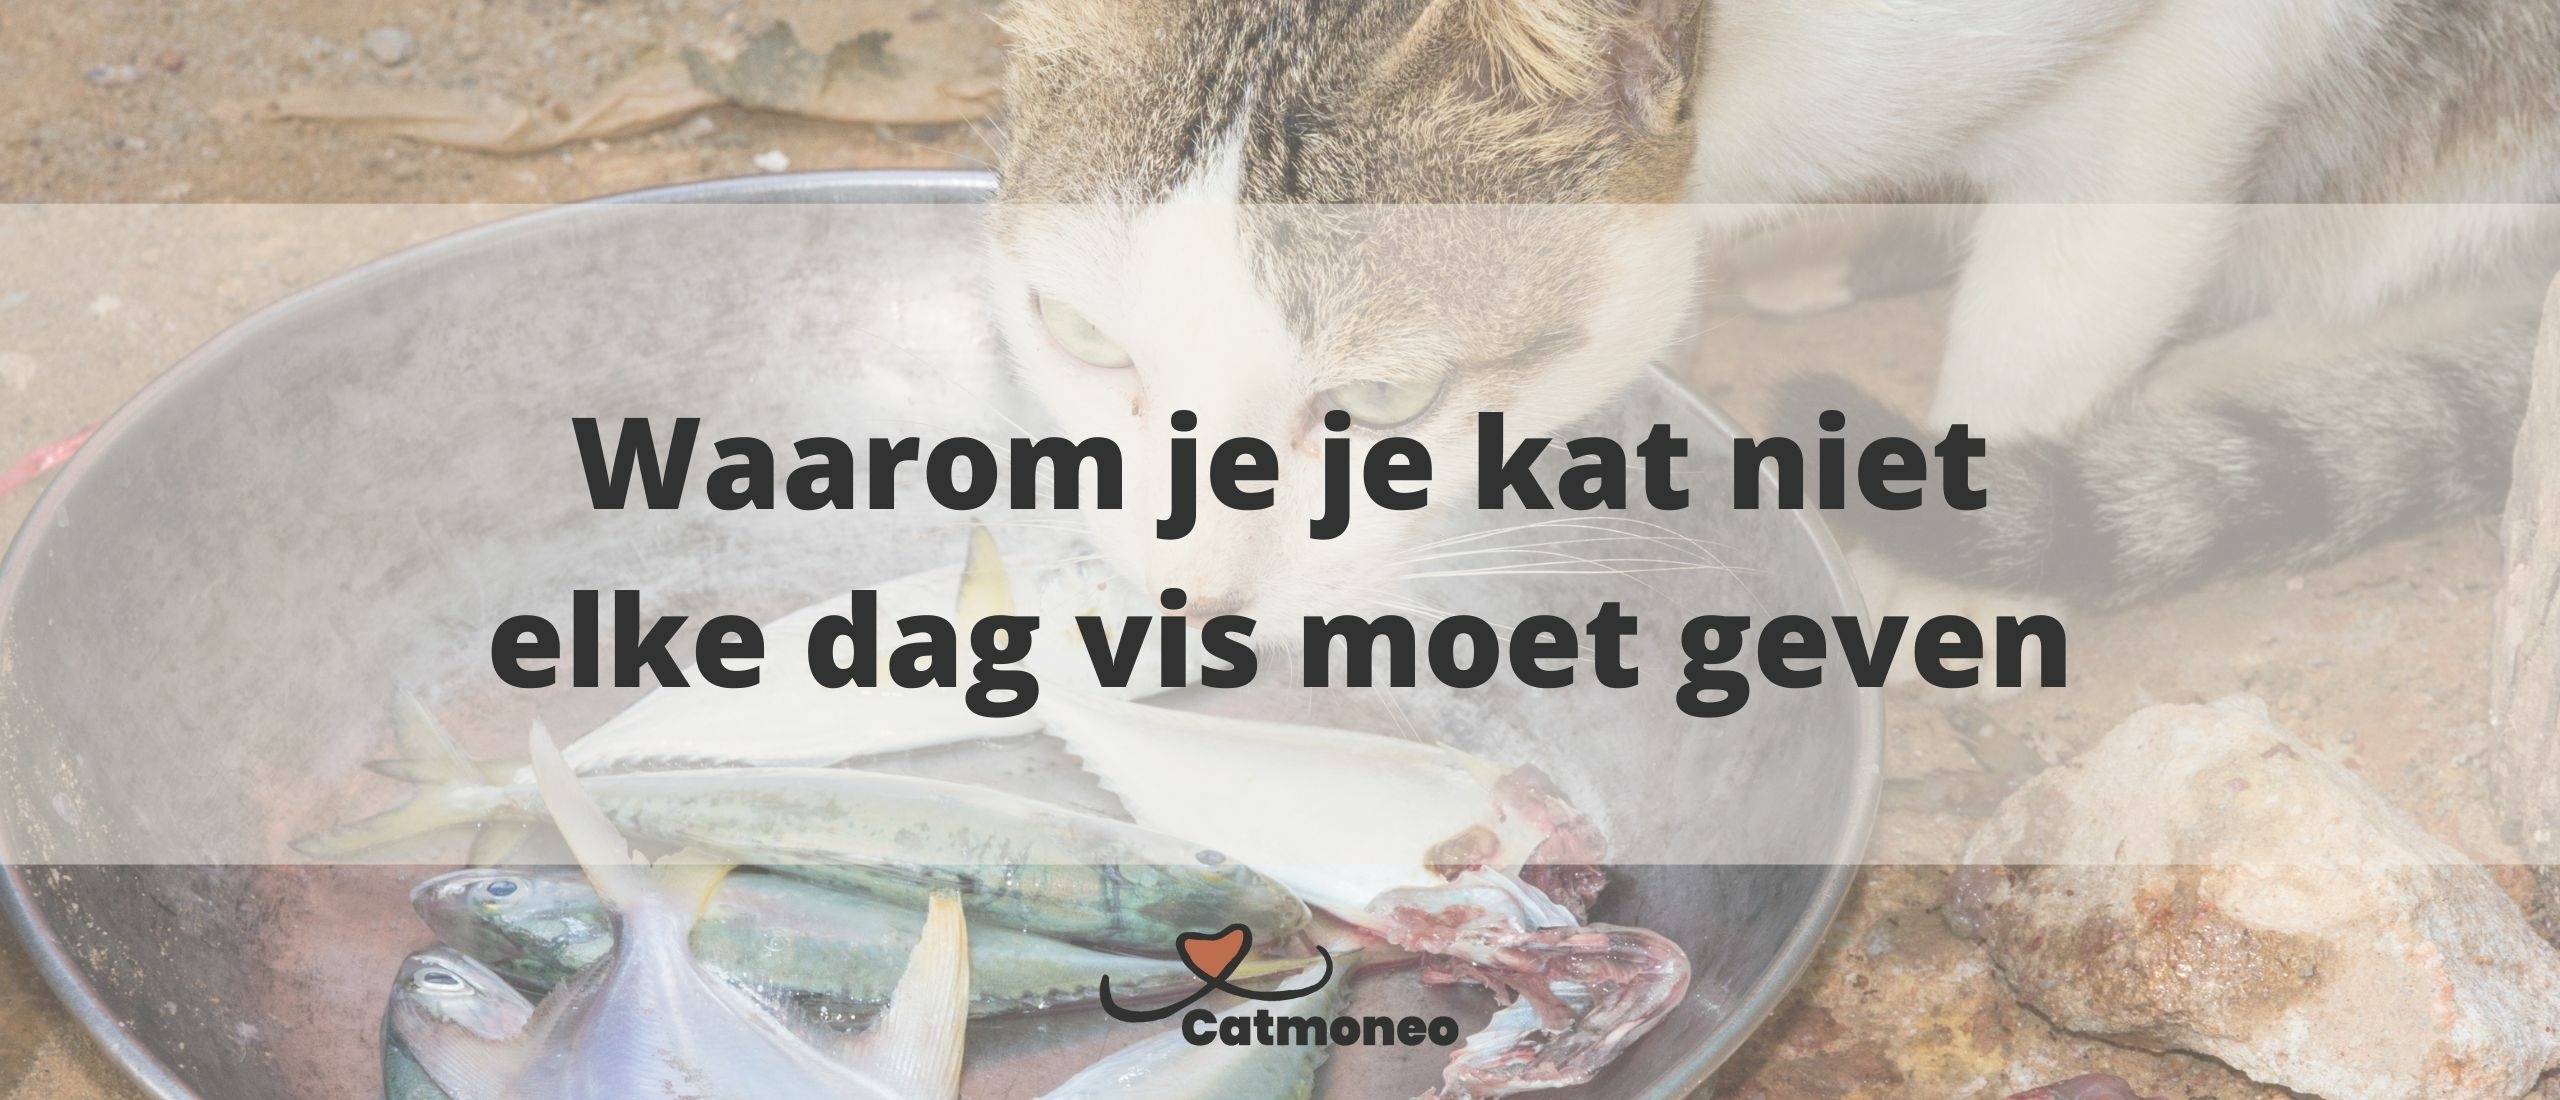 12 Redenen waarom vis slecht is voor je kat